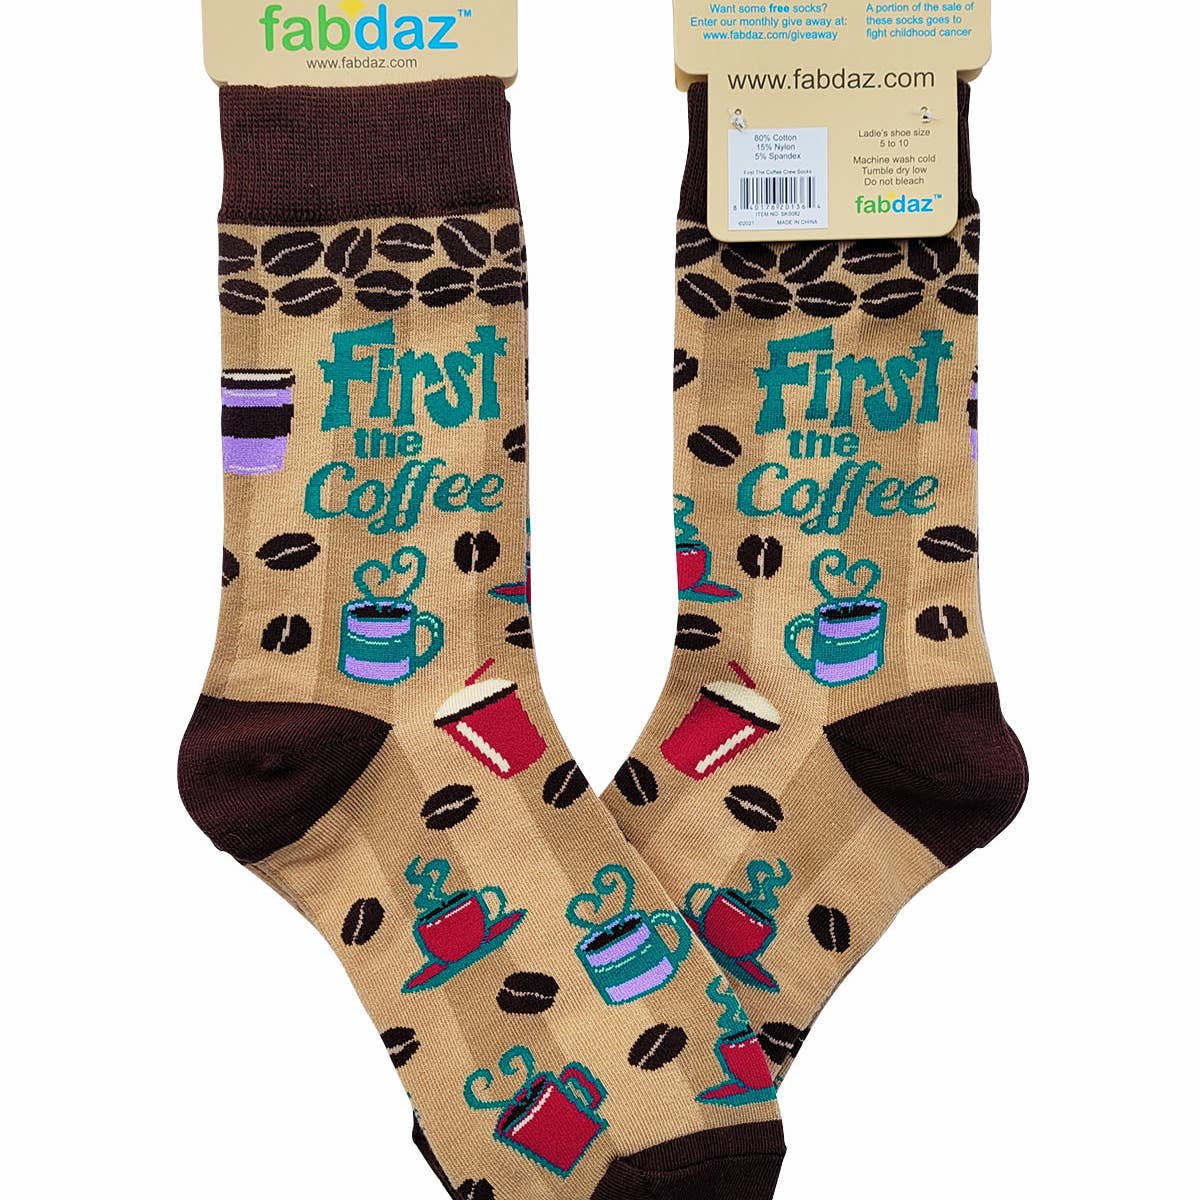 Fabdaz Women’s Socks